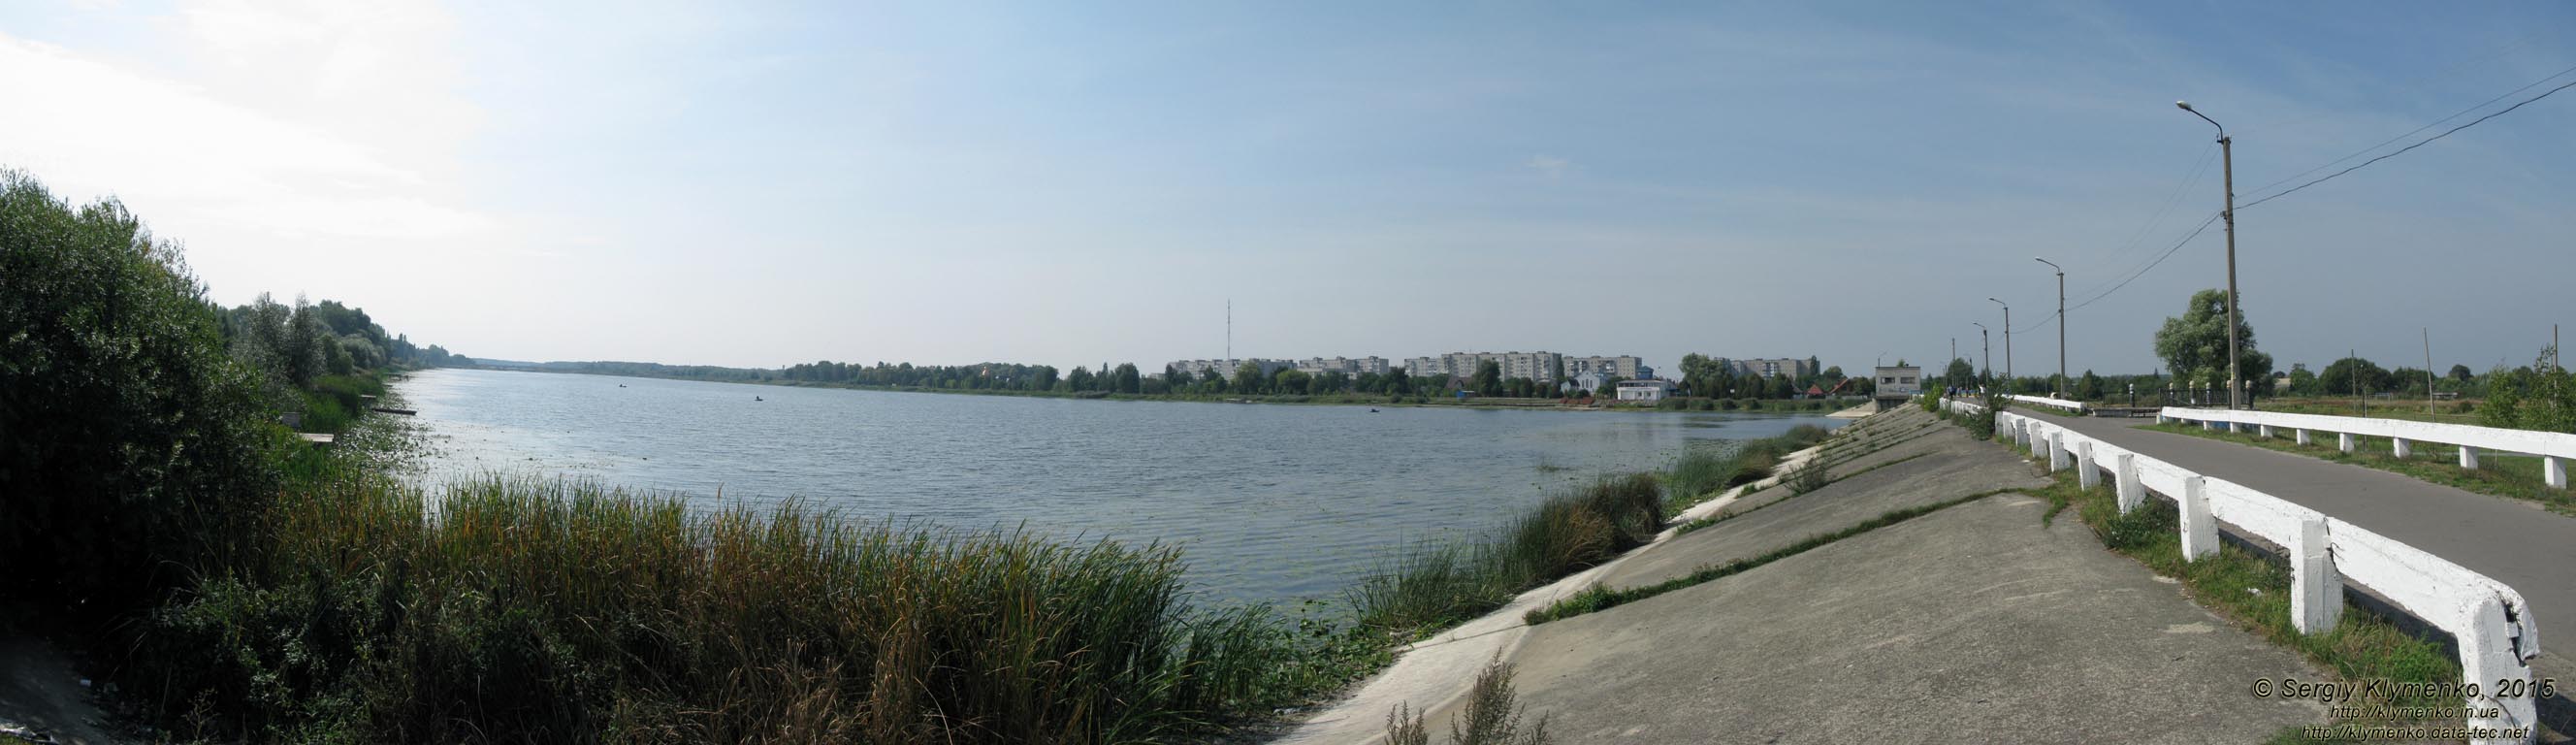 Волынская область, город Ковель. Фото. Искусственное водохранилище на реке Турья. Панорама ~150°.